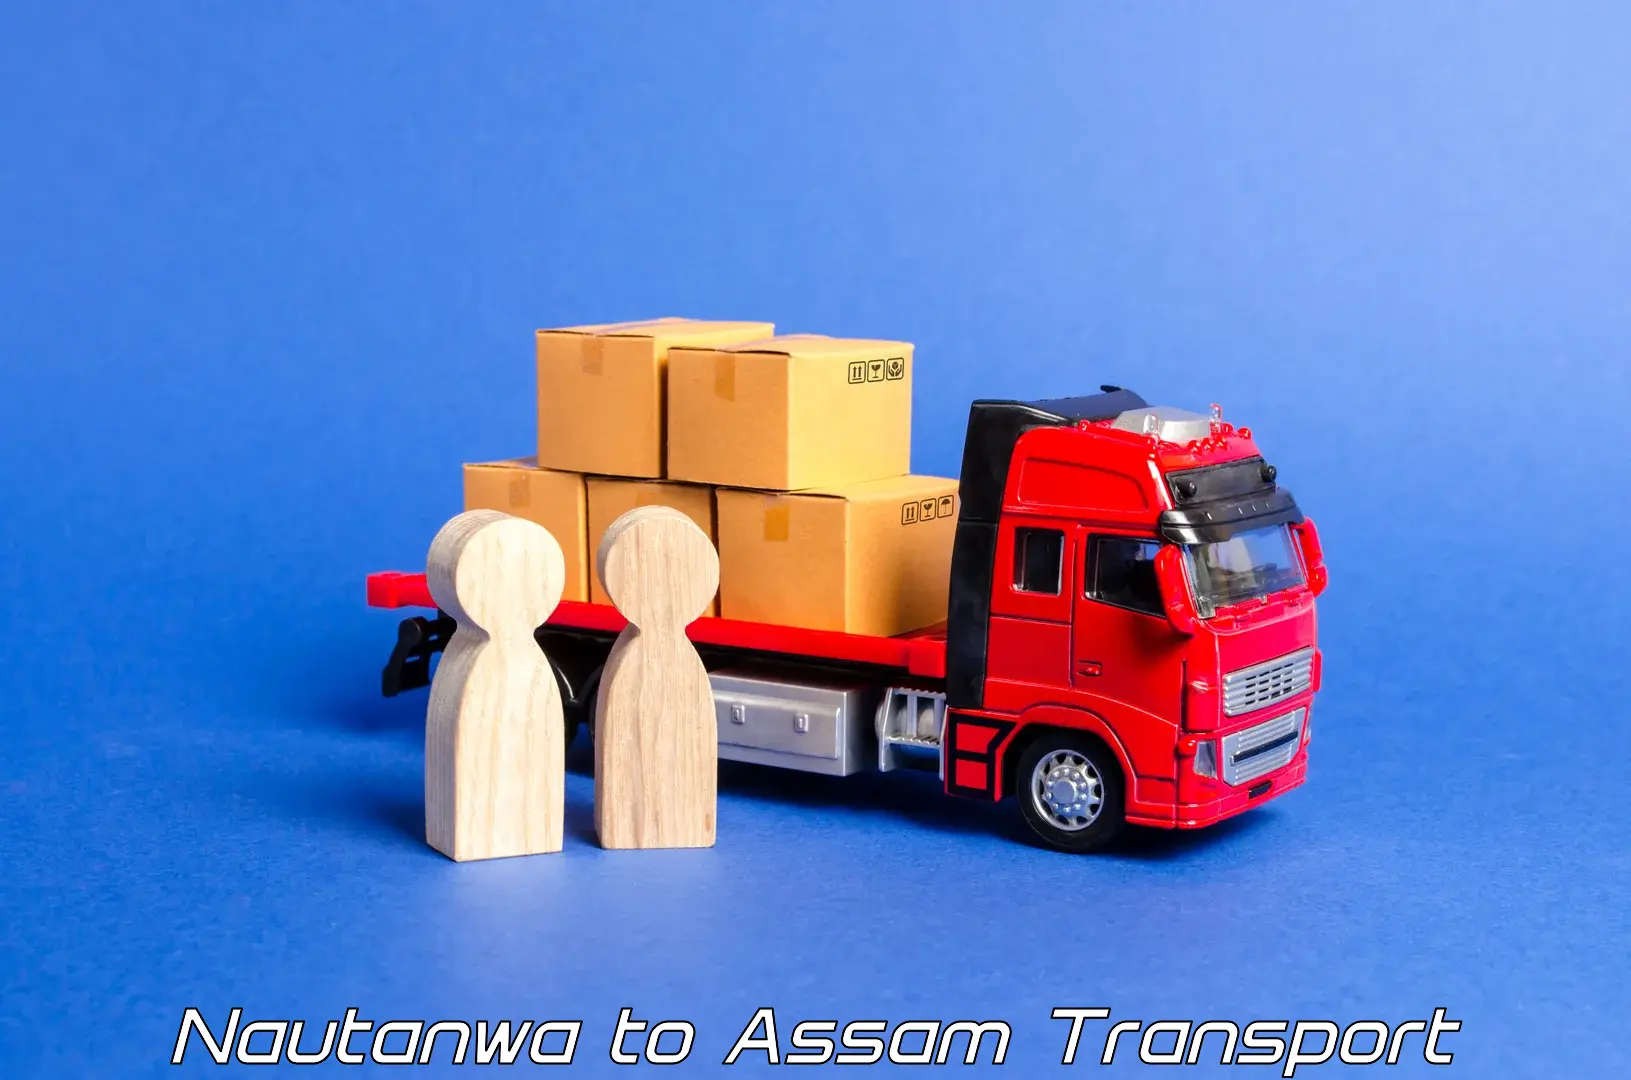 Shipping partner Nautanwa to Hajo